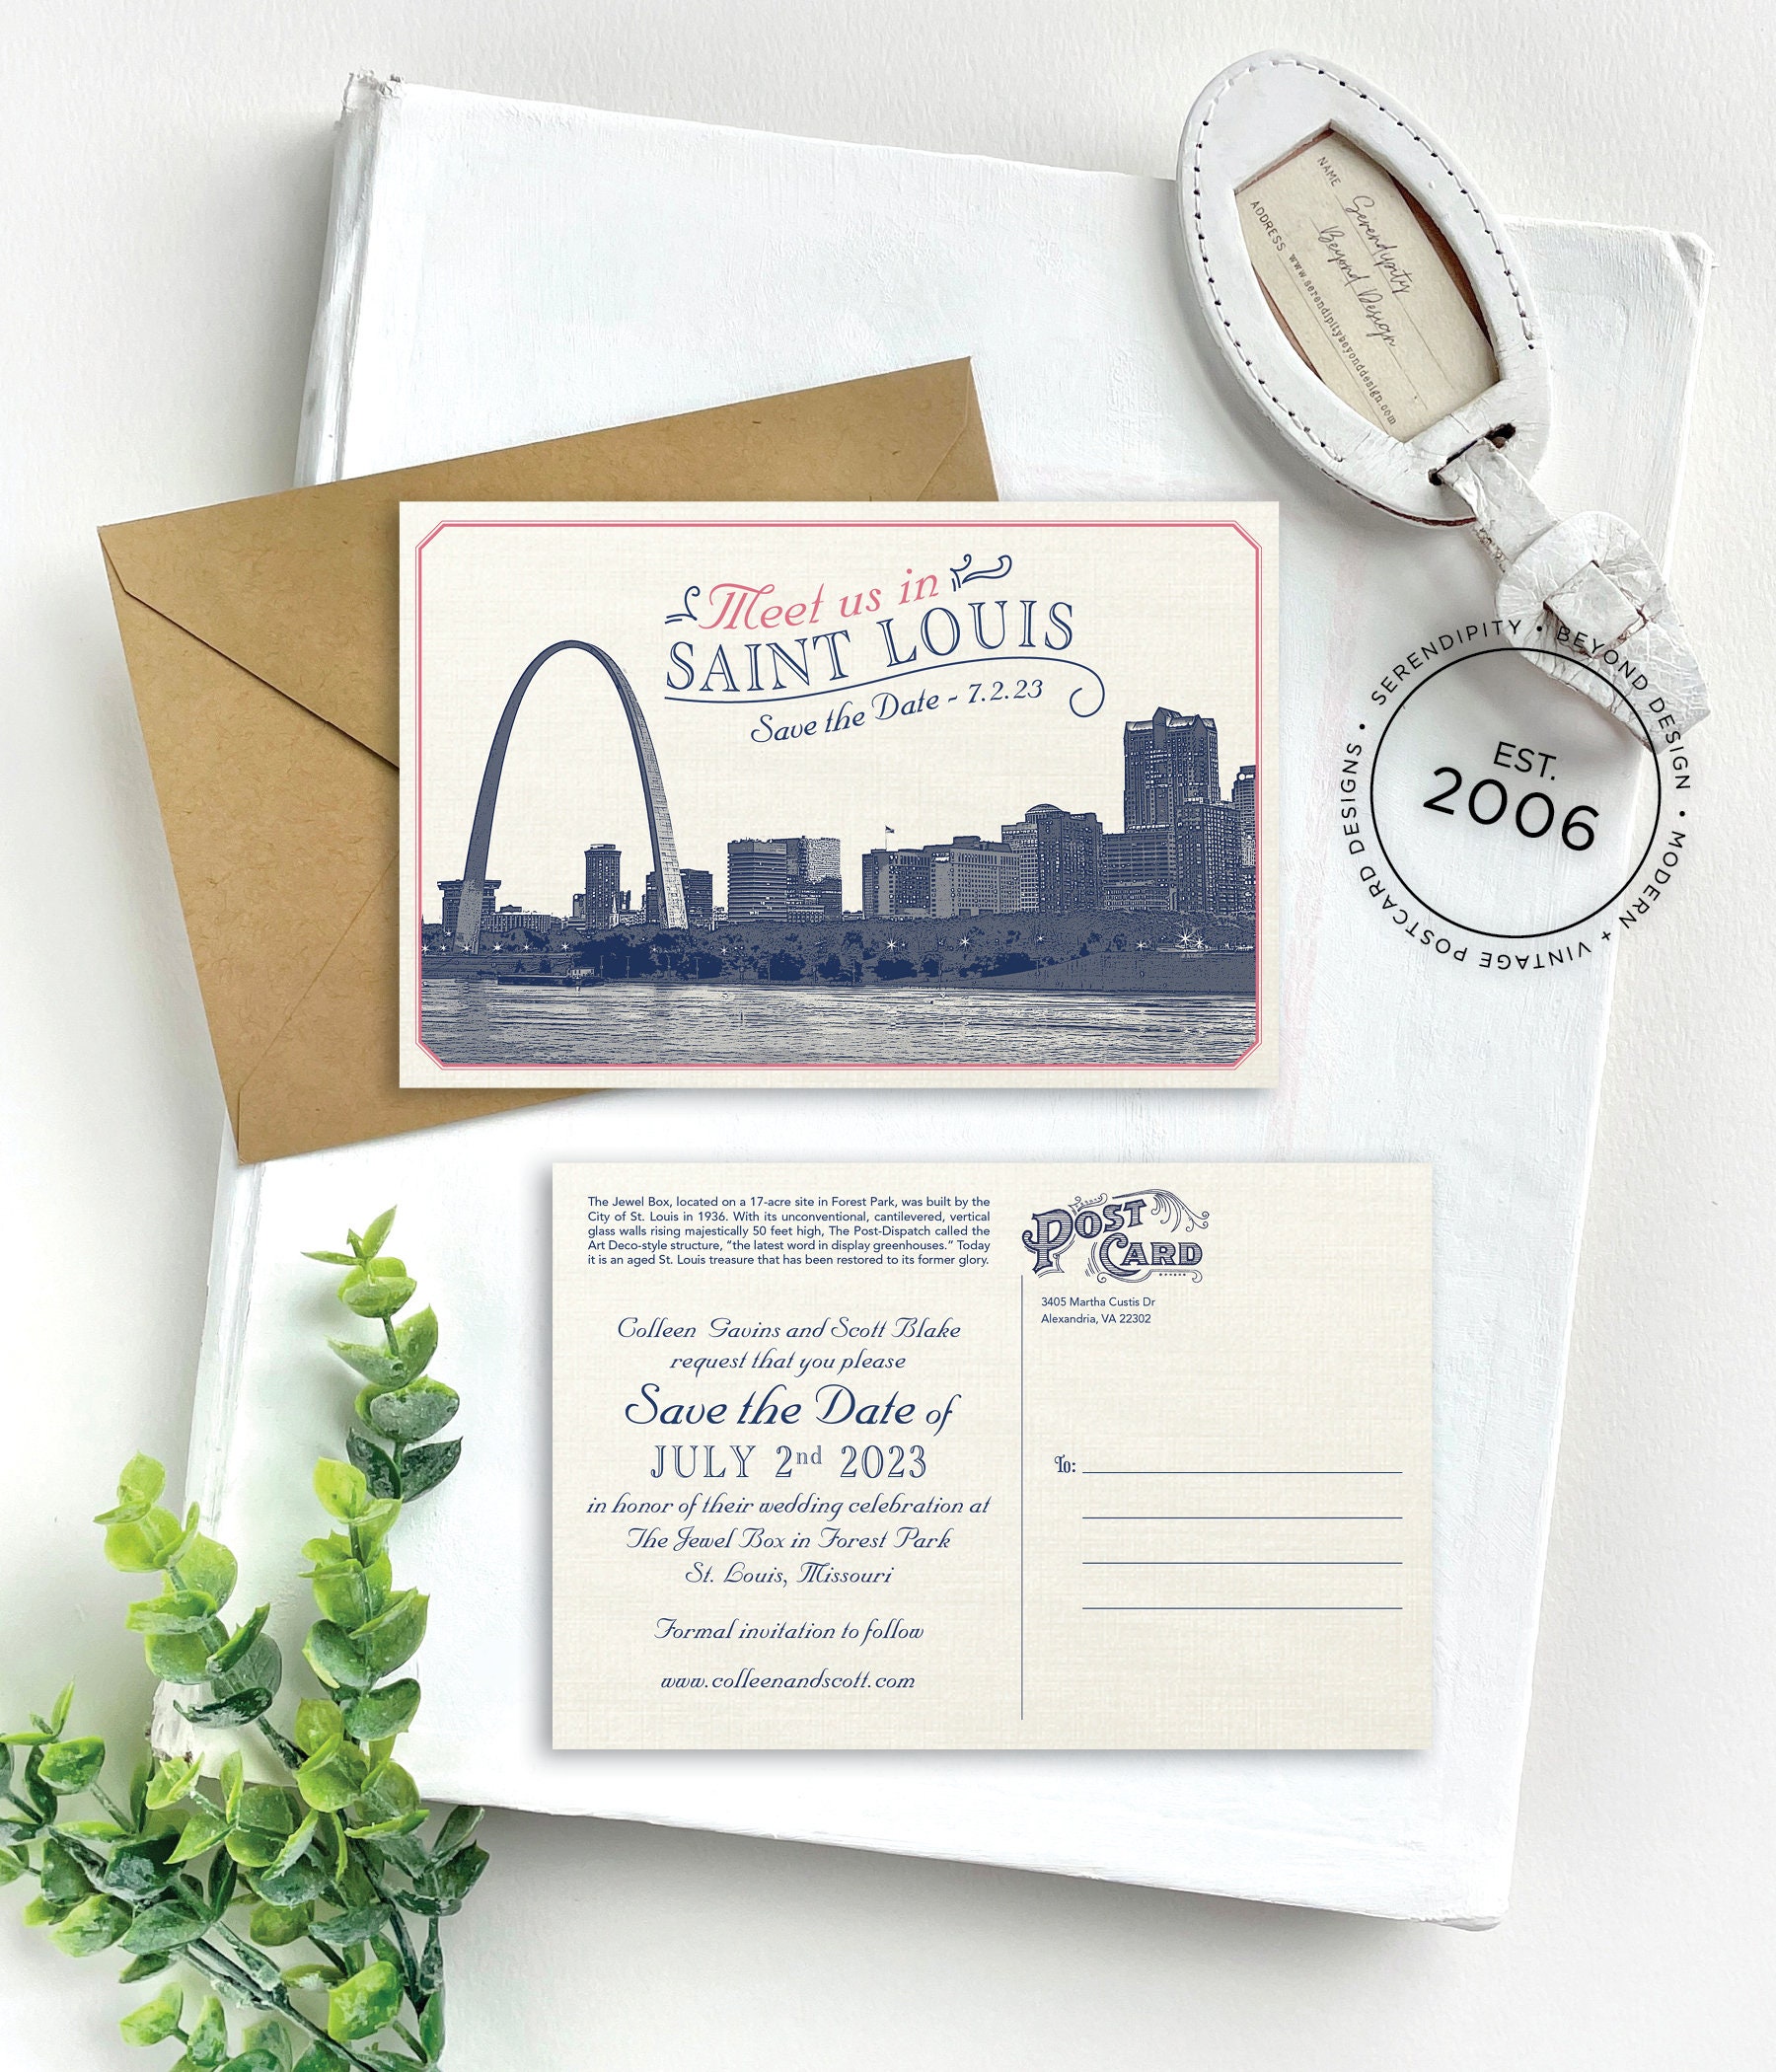 St. Louis Postcards, A collage of vintage St. Louis postcar…